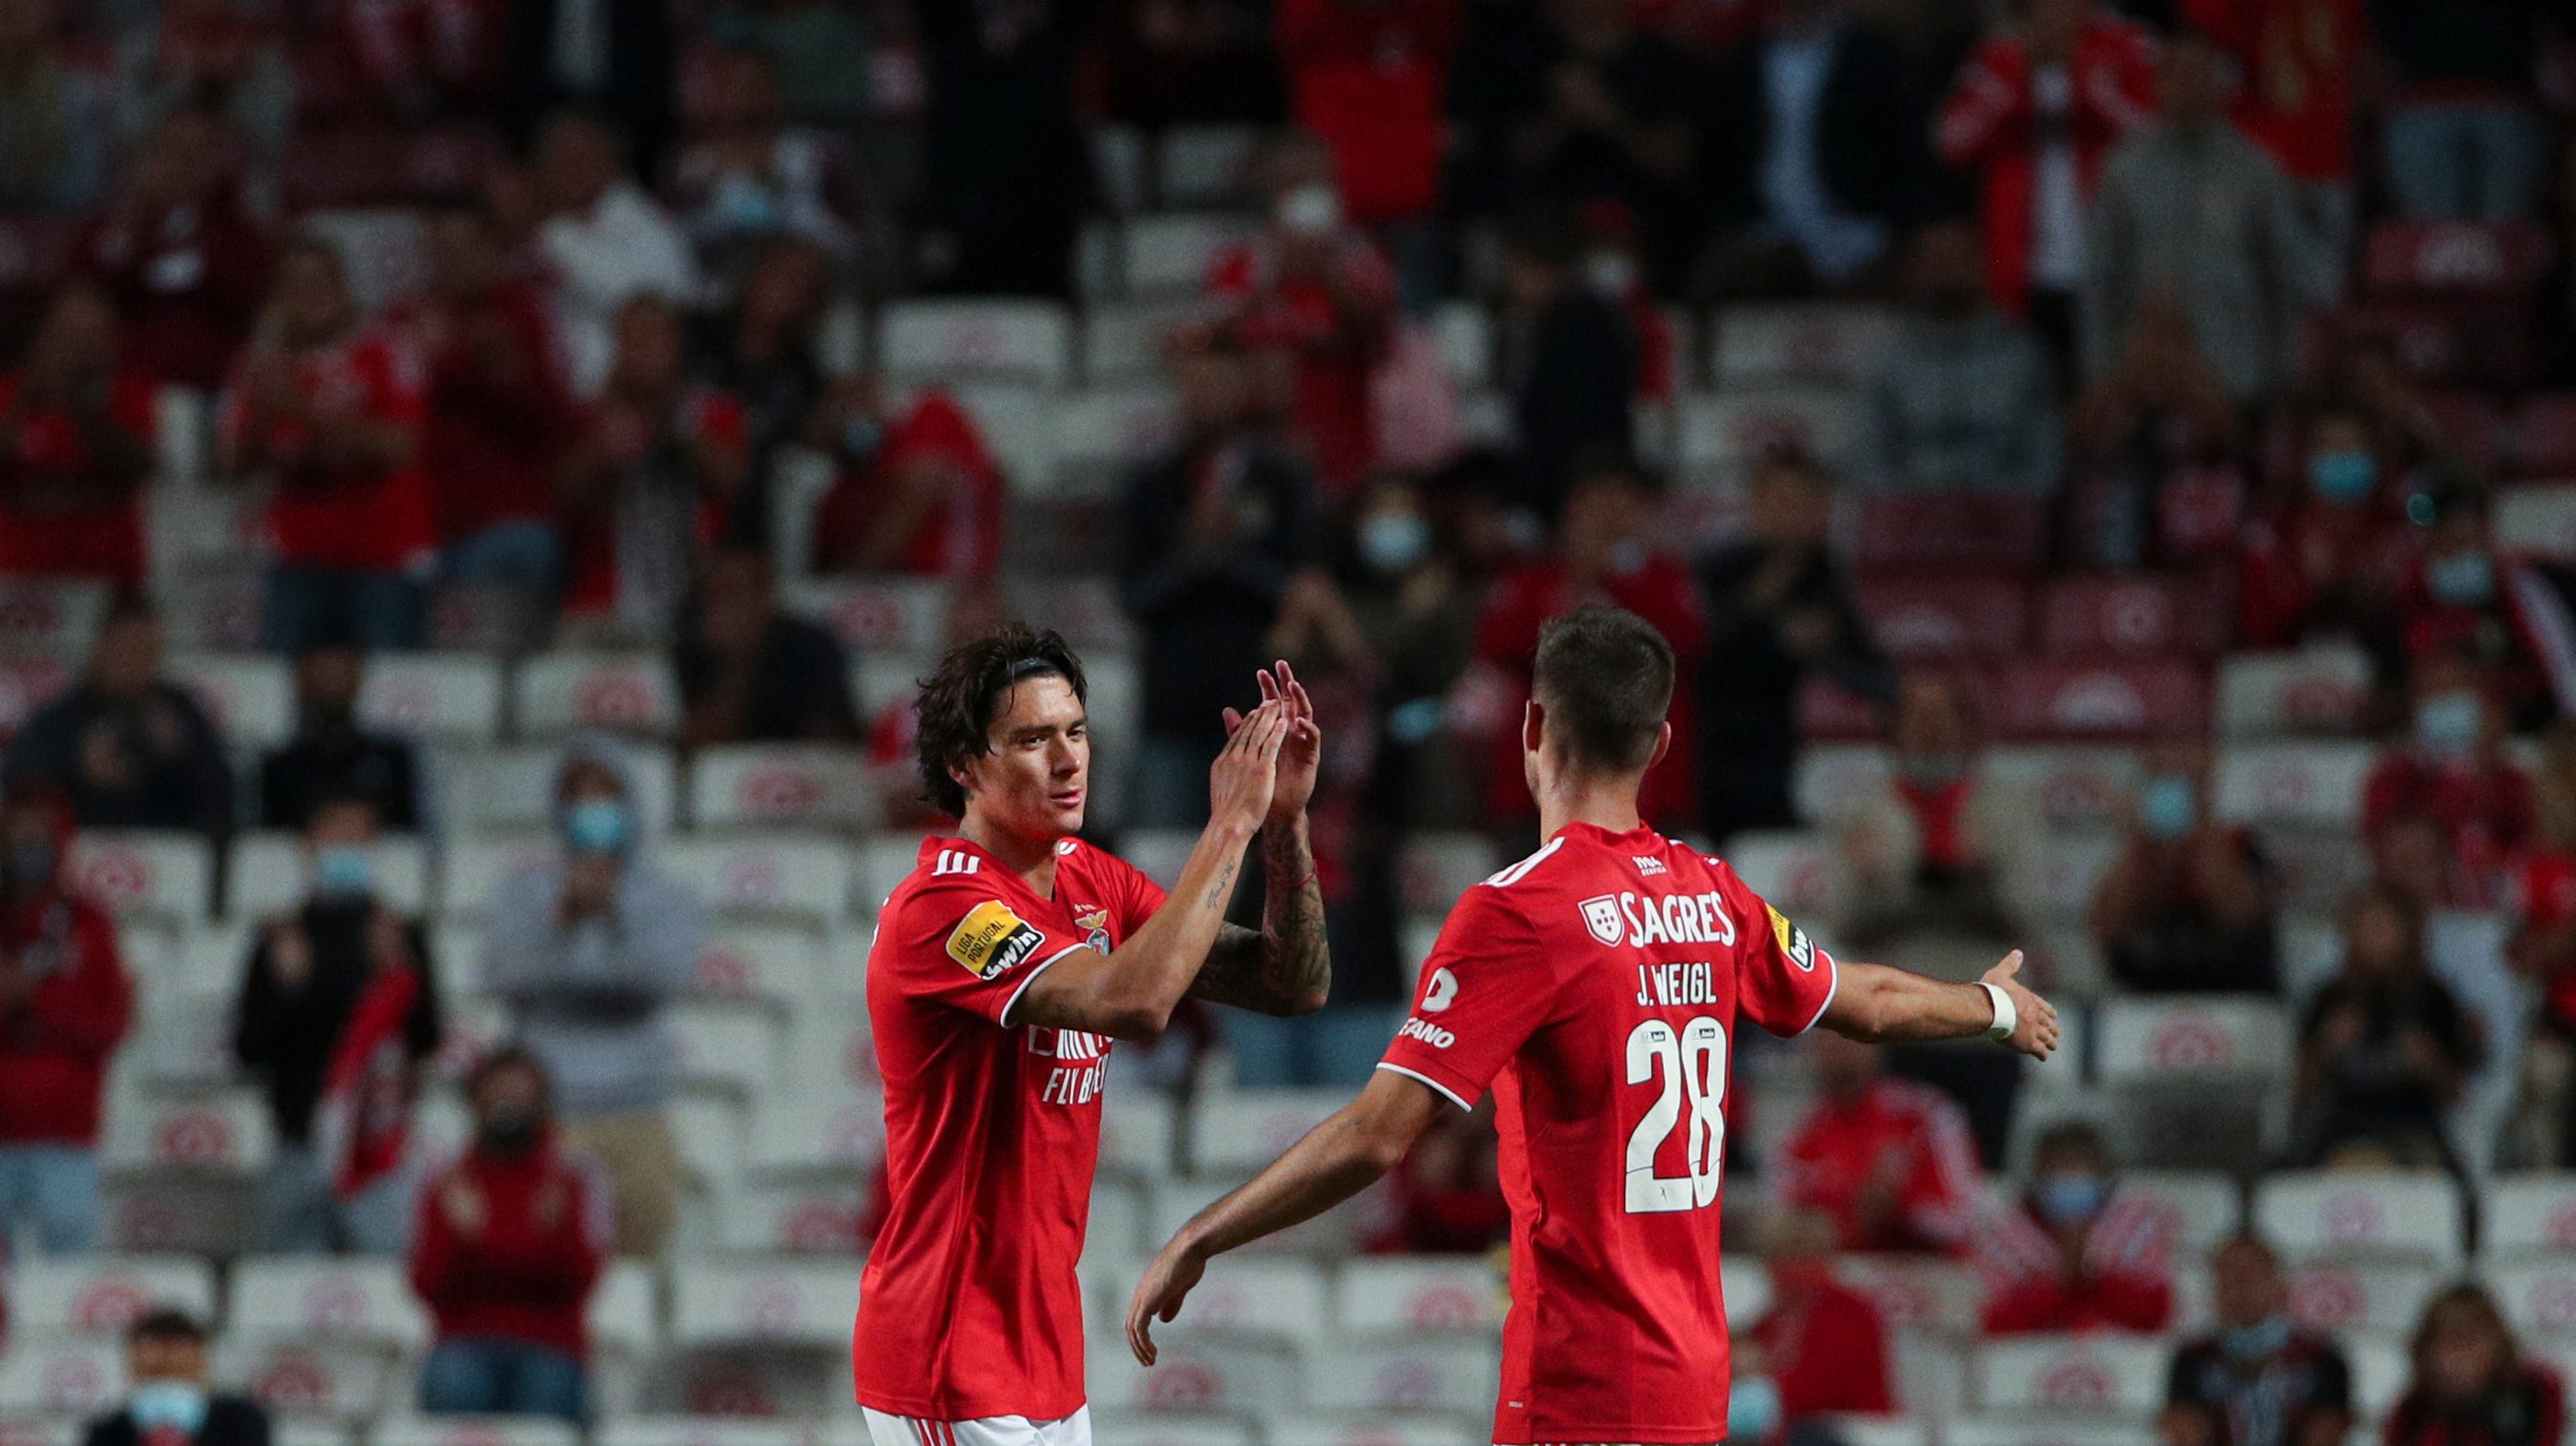 Darwin Núñez e Weigl marcaram os golos da sexta vitória seguida do Benfica no Campeonato, algo que não acontecia há 39 anos